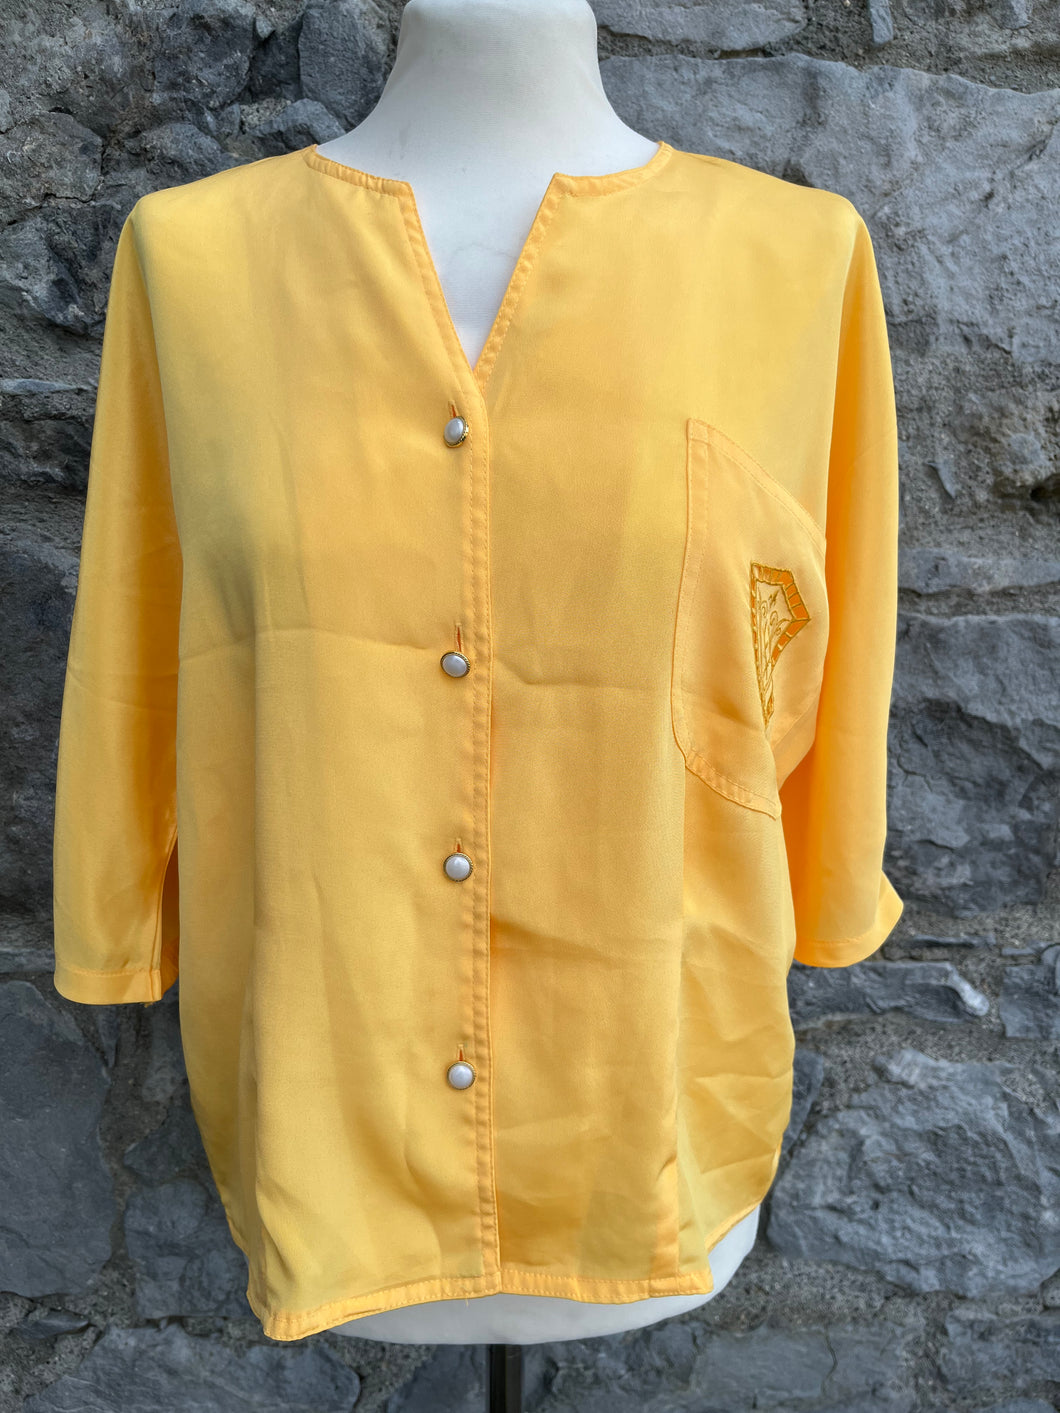 80s yellow blouse uk 10-12